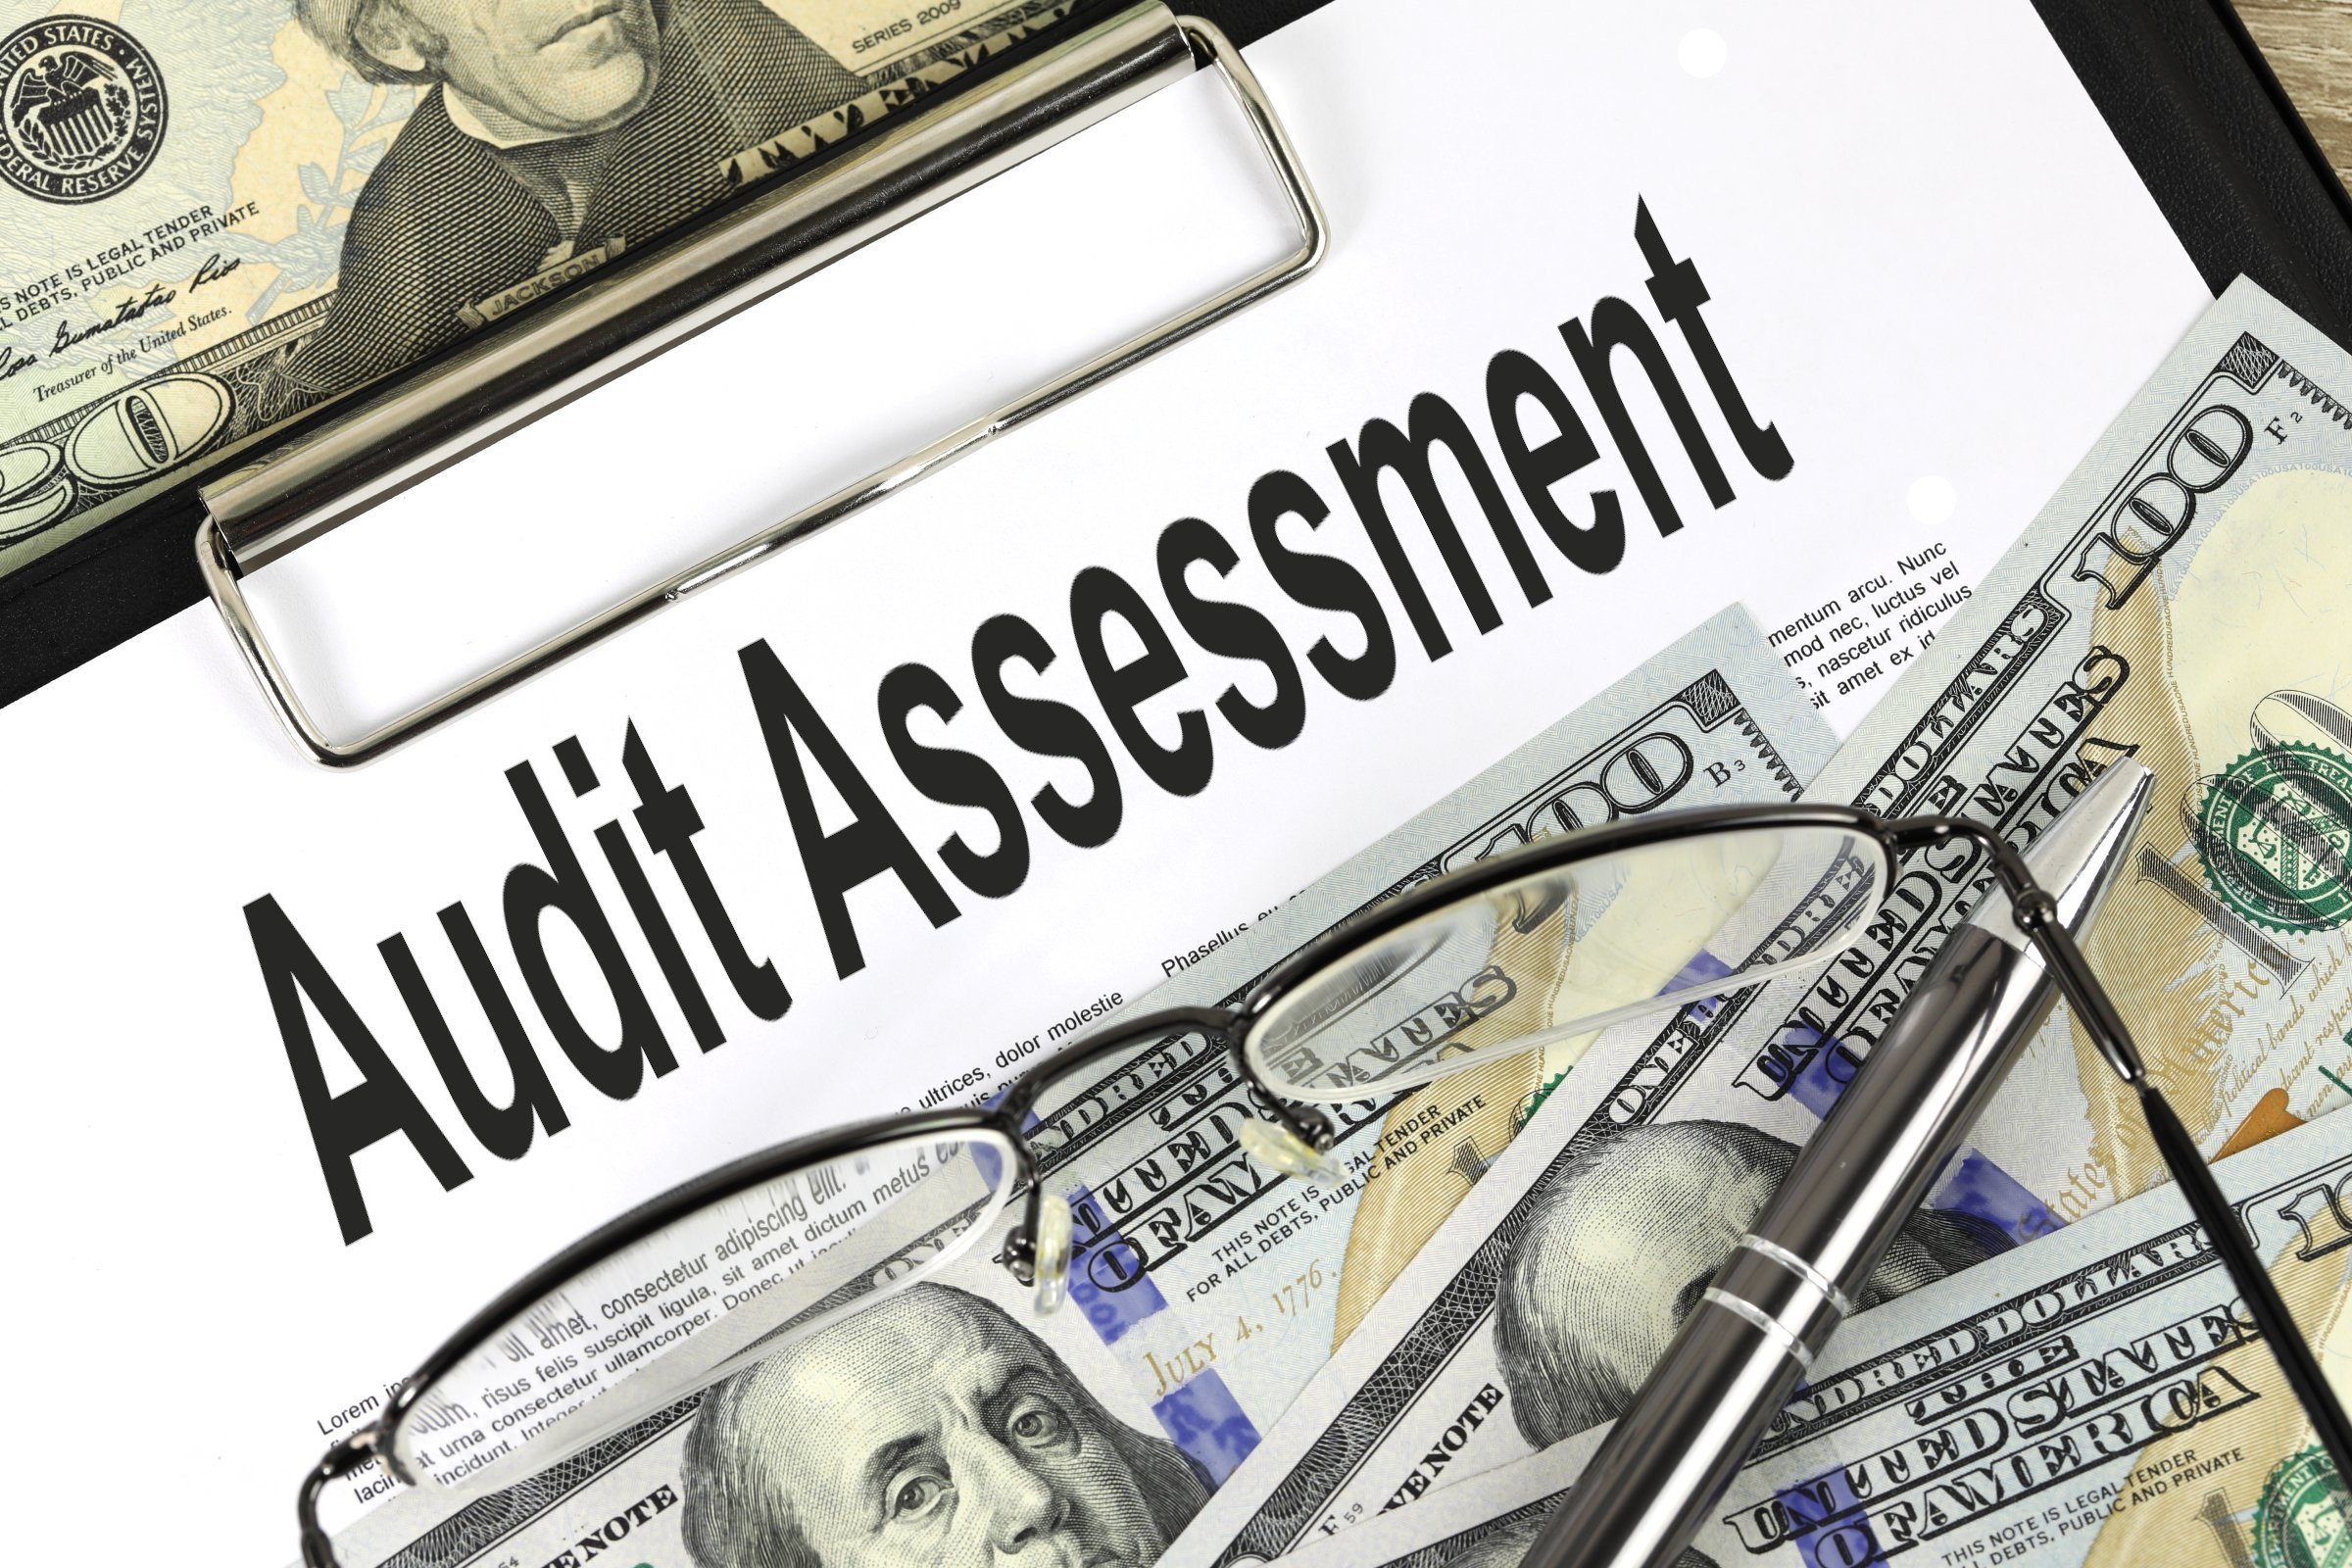 audit assessment